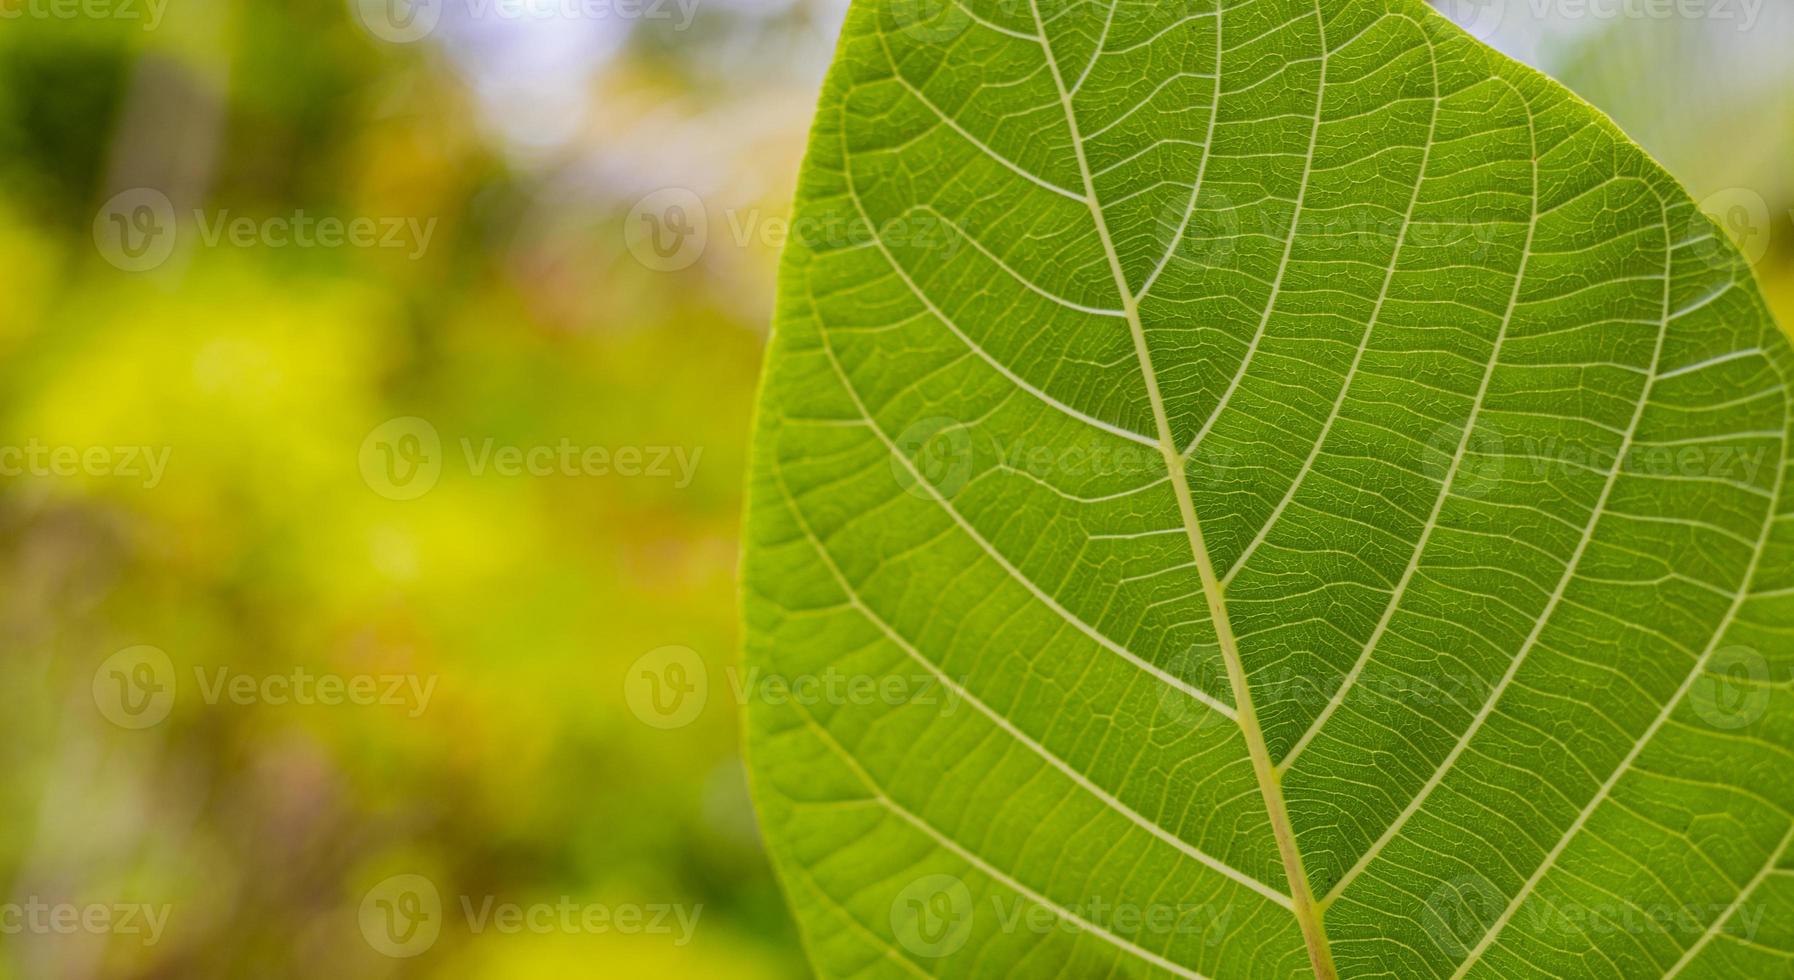 groene blad close-up voor achtergrond. aard van groen blad in de tuin in de zomer. natuurlijke groene bladeren planten gebruiken als lente achtergrond voorblad groen milieu ecologie behang foto